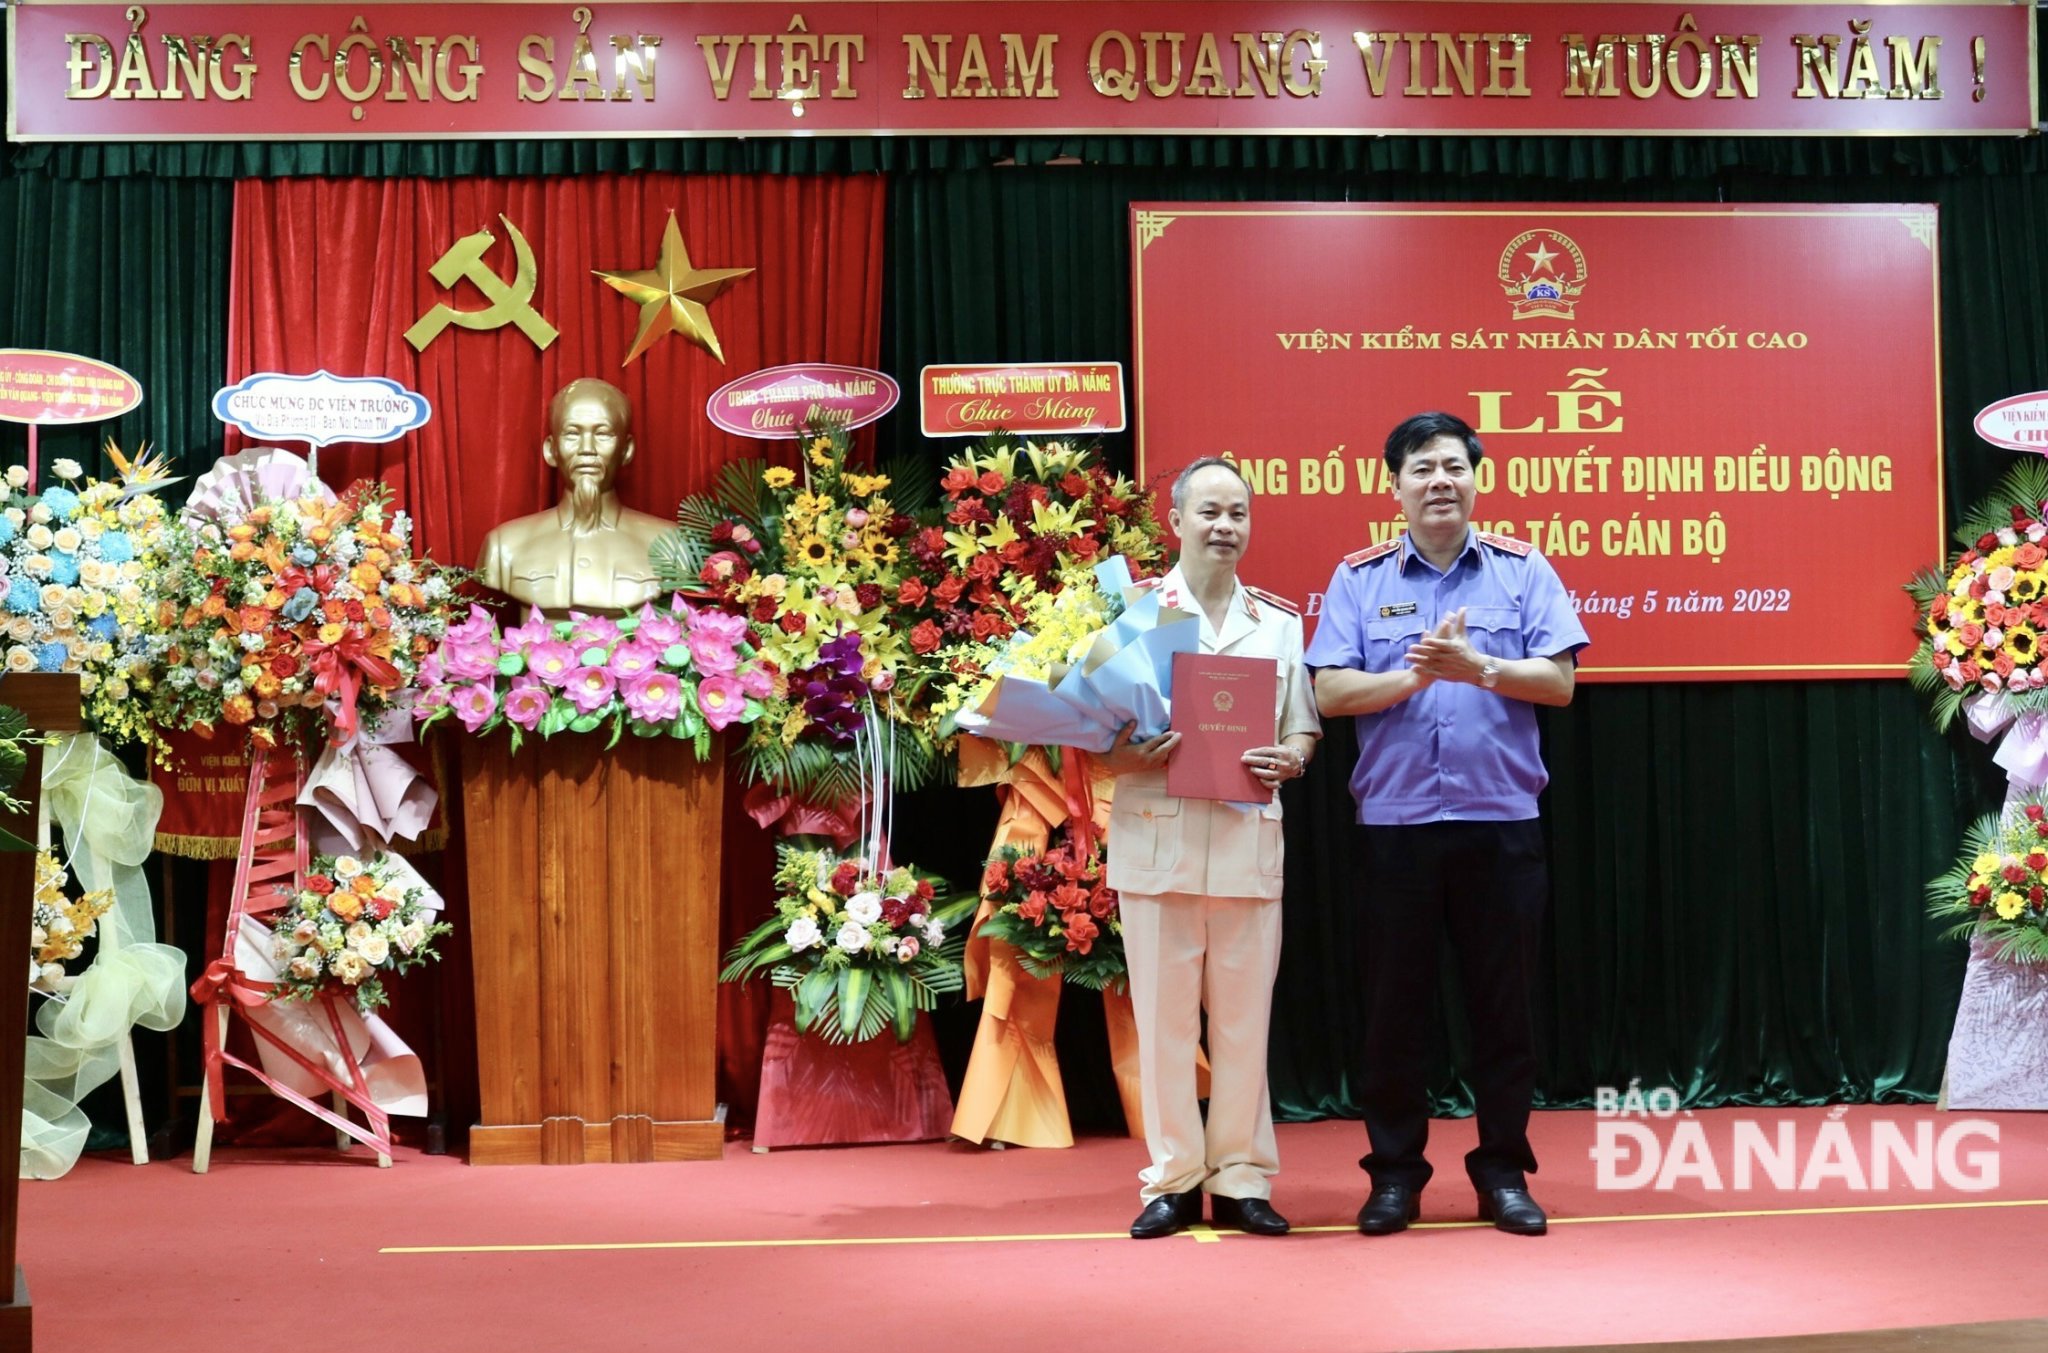 Phó Viện trưởng VKSND tối cao Nguyễn Quang Dũng (bên phải) trao quyết định bổ nhiệm và tặng hoa cho đồng chí Nguyễn Văn Quang. Ảnh: N.Q